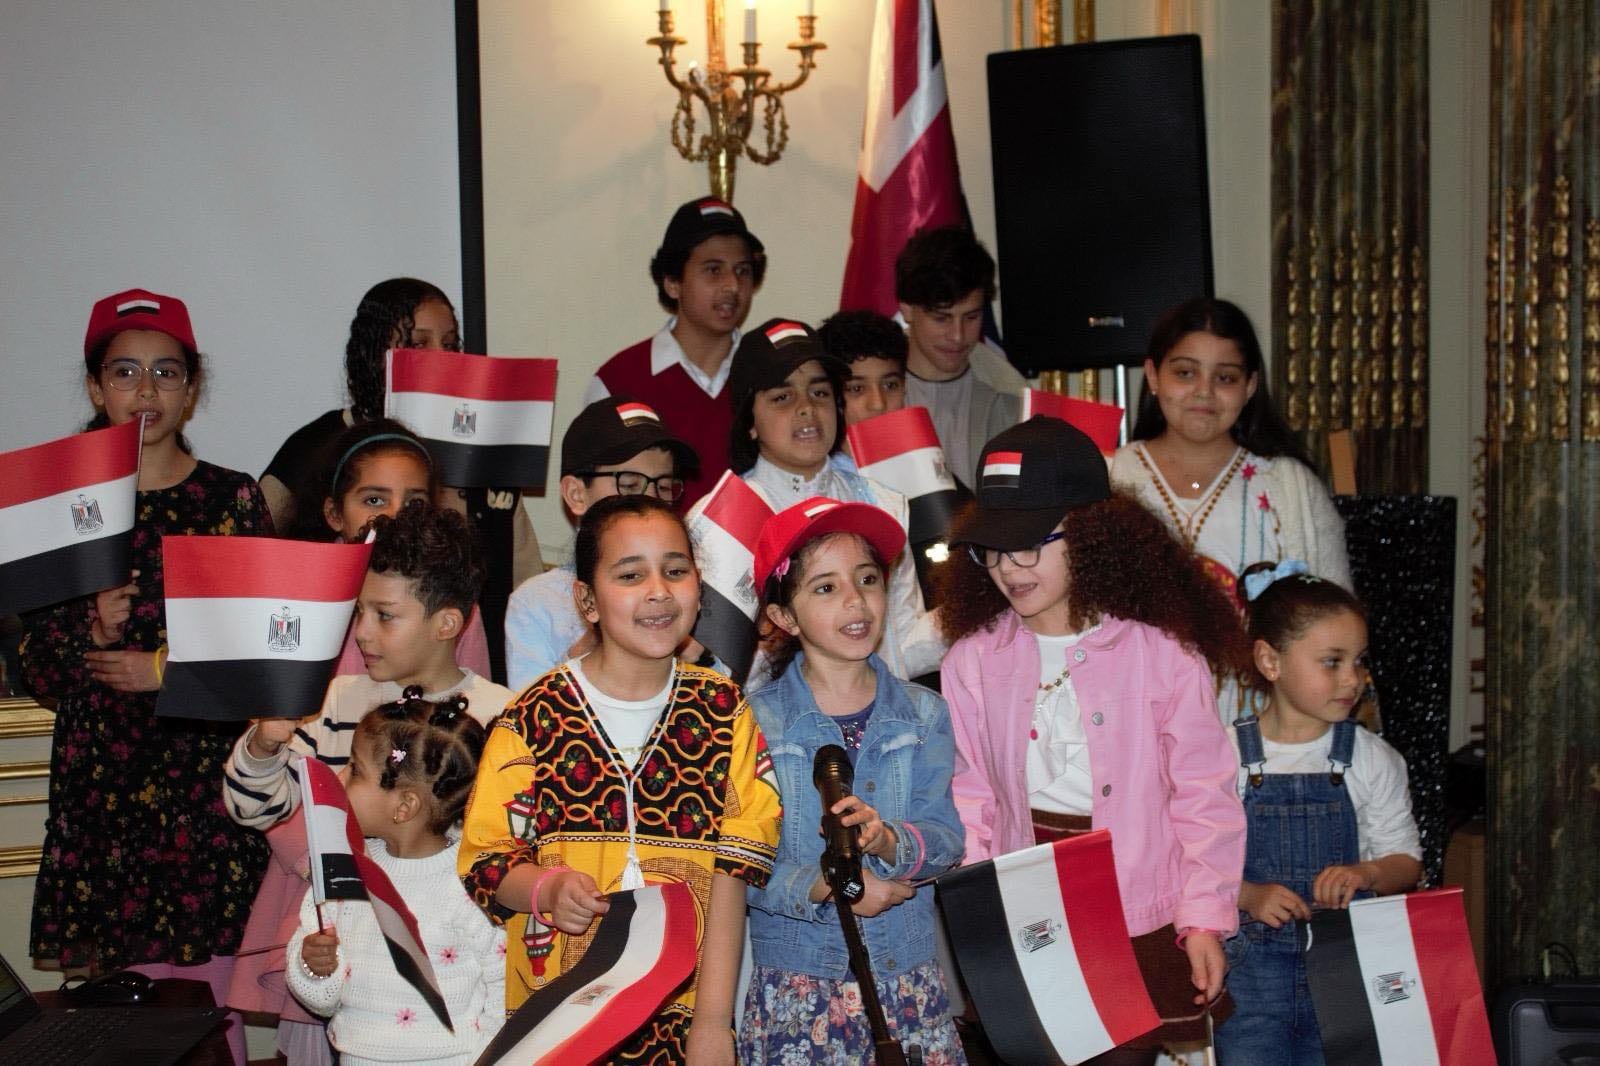 المركز الثقافي المصري بلندن يحتفل بشهر رمضان وعيد الأم